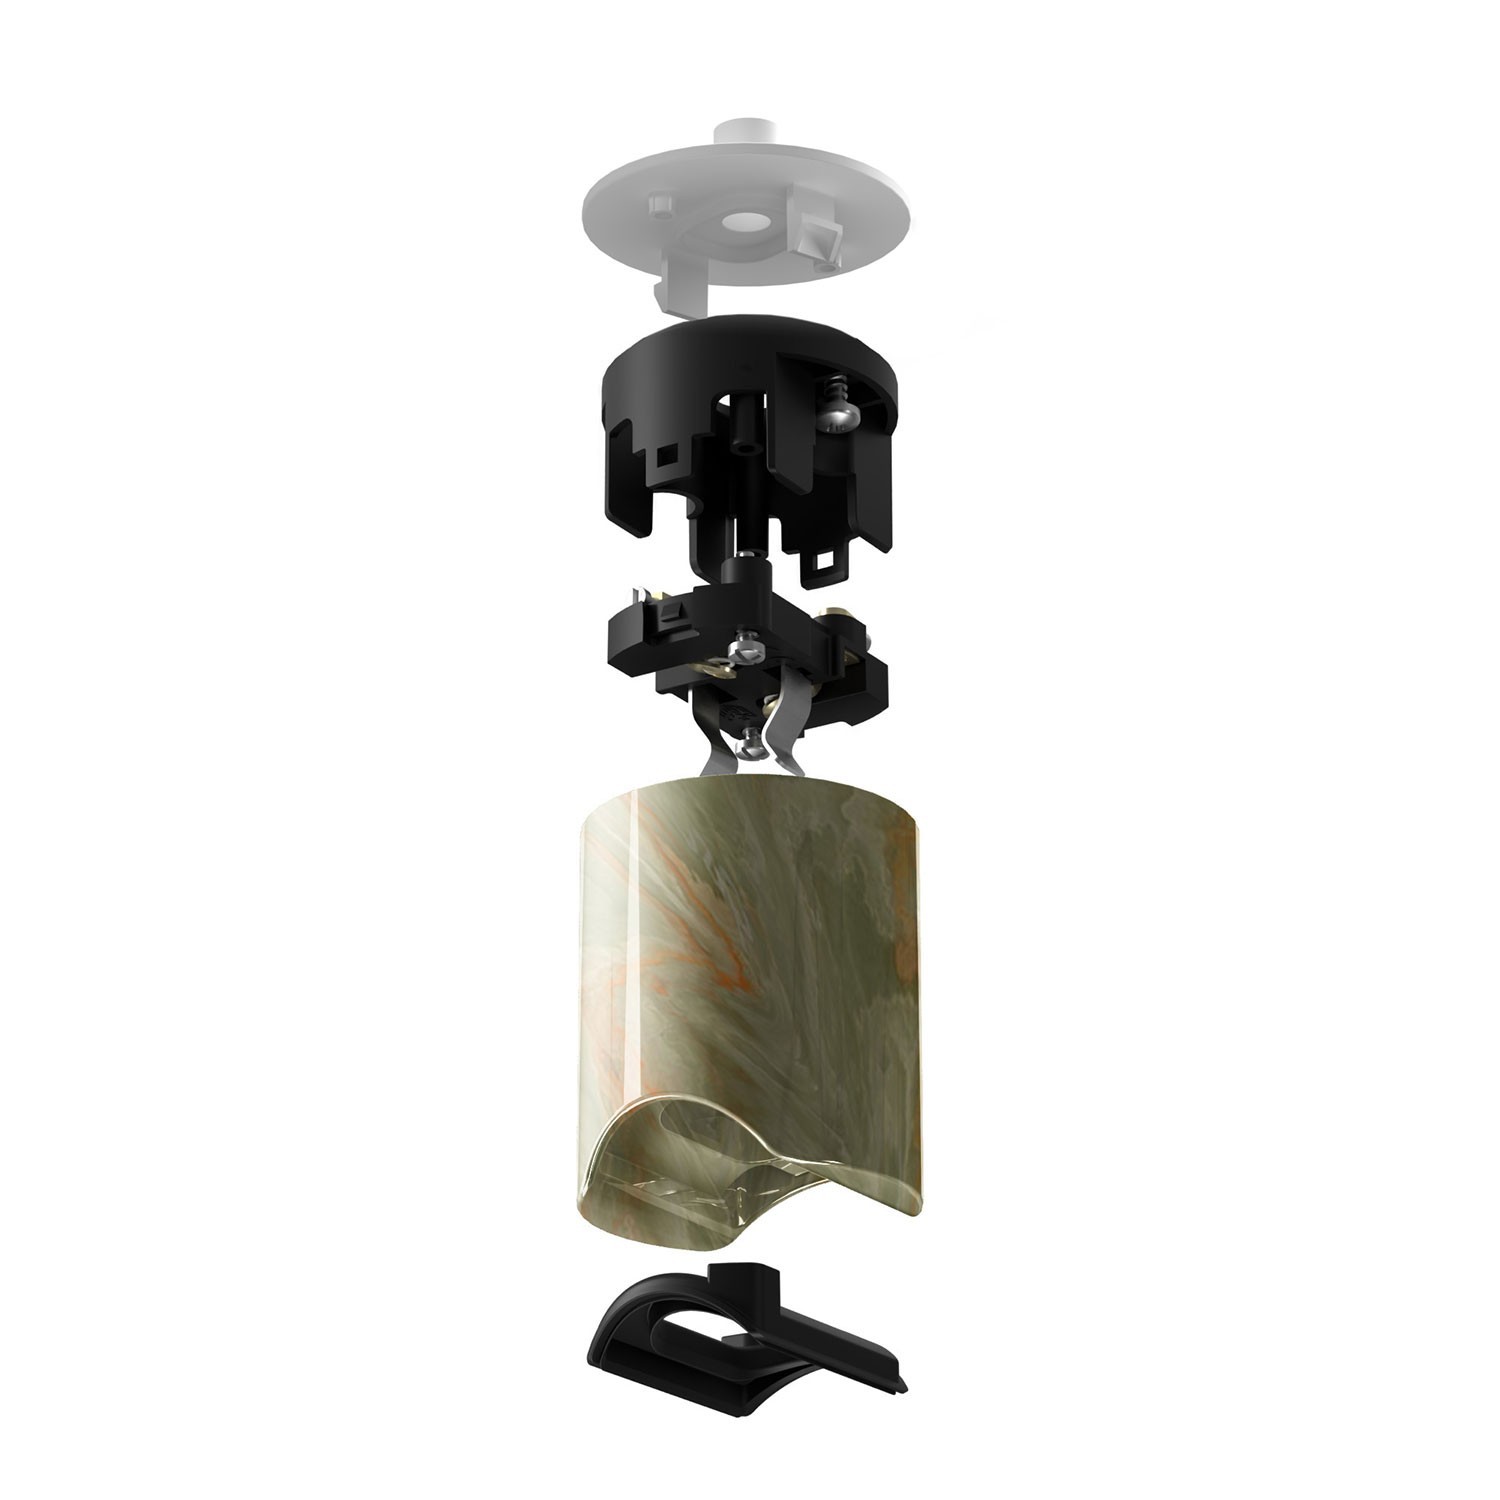 Kit esse14 lamphouder voor hanglampen met S14d-fitting